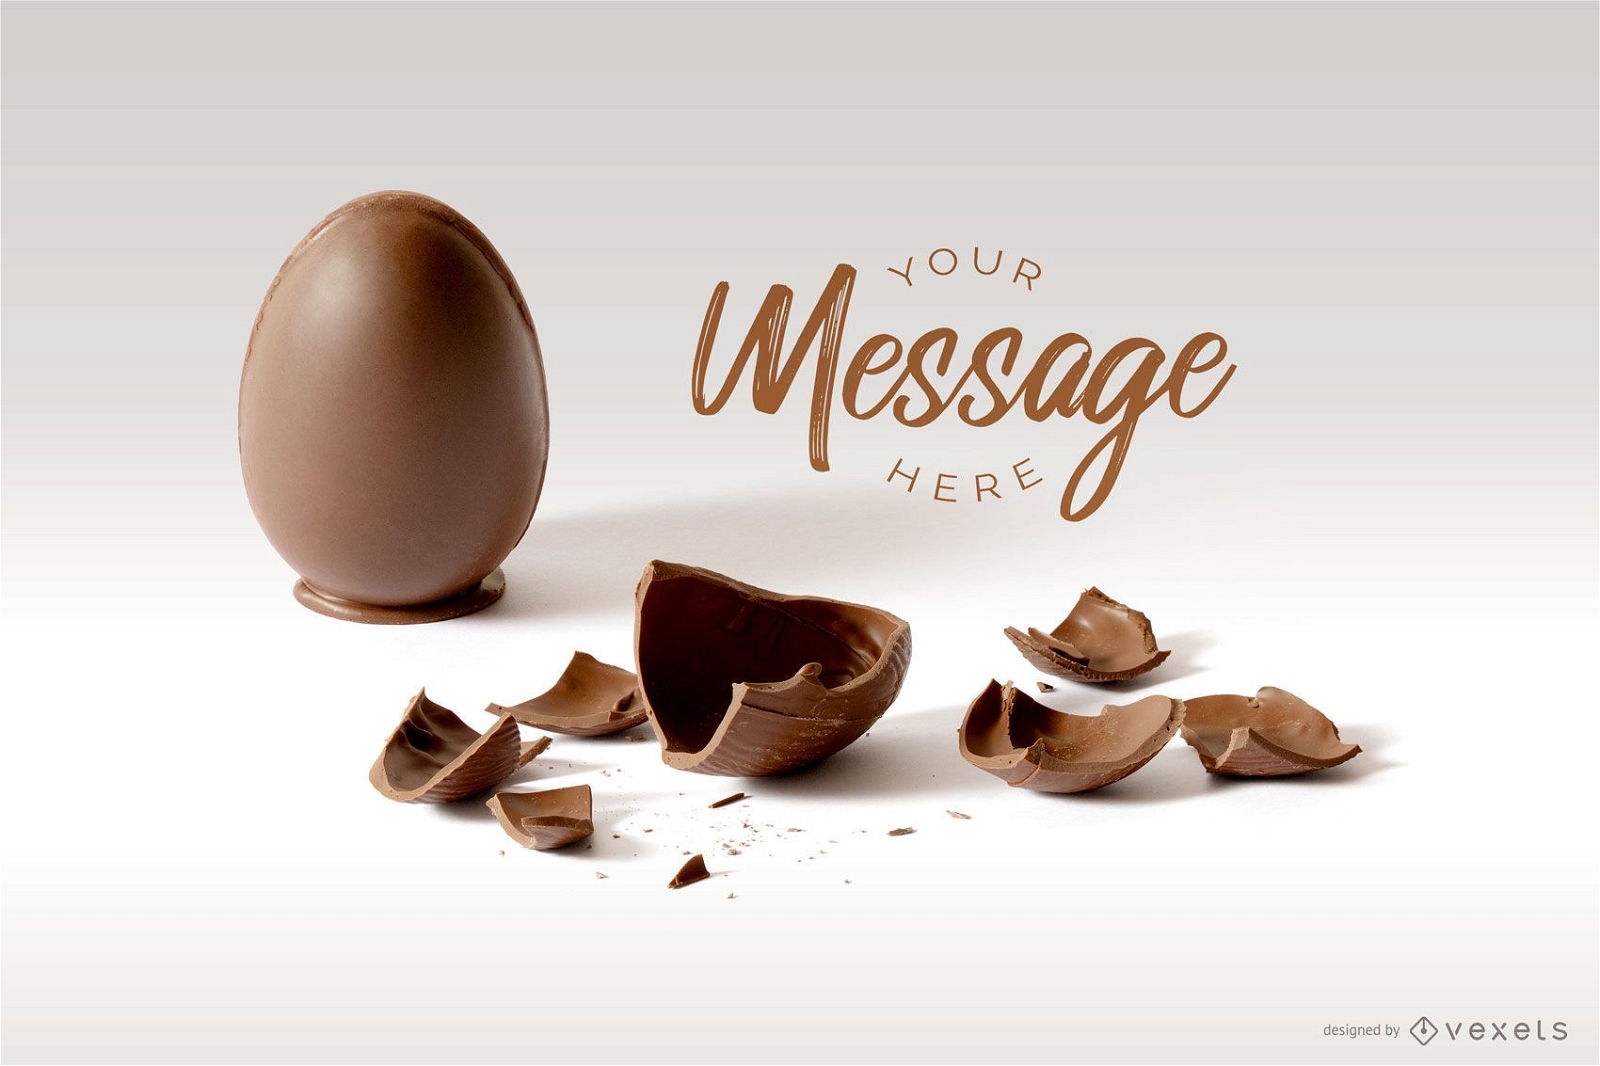 Maqueta de mensaje de huevo de Pascua agrietado